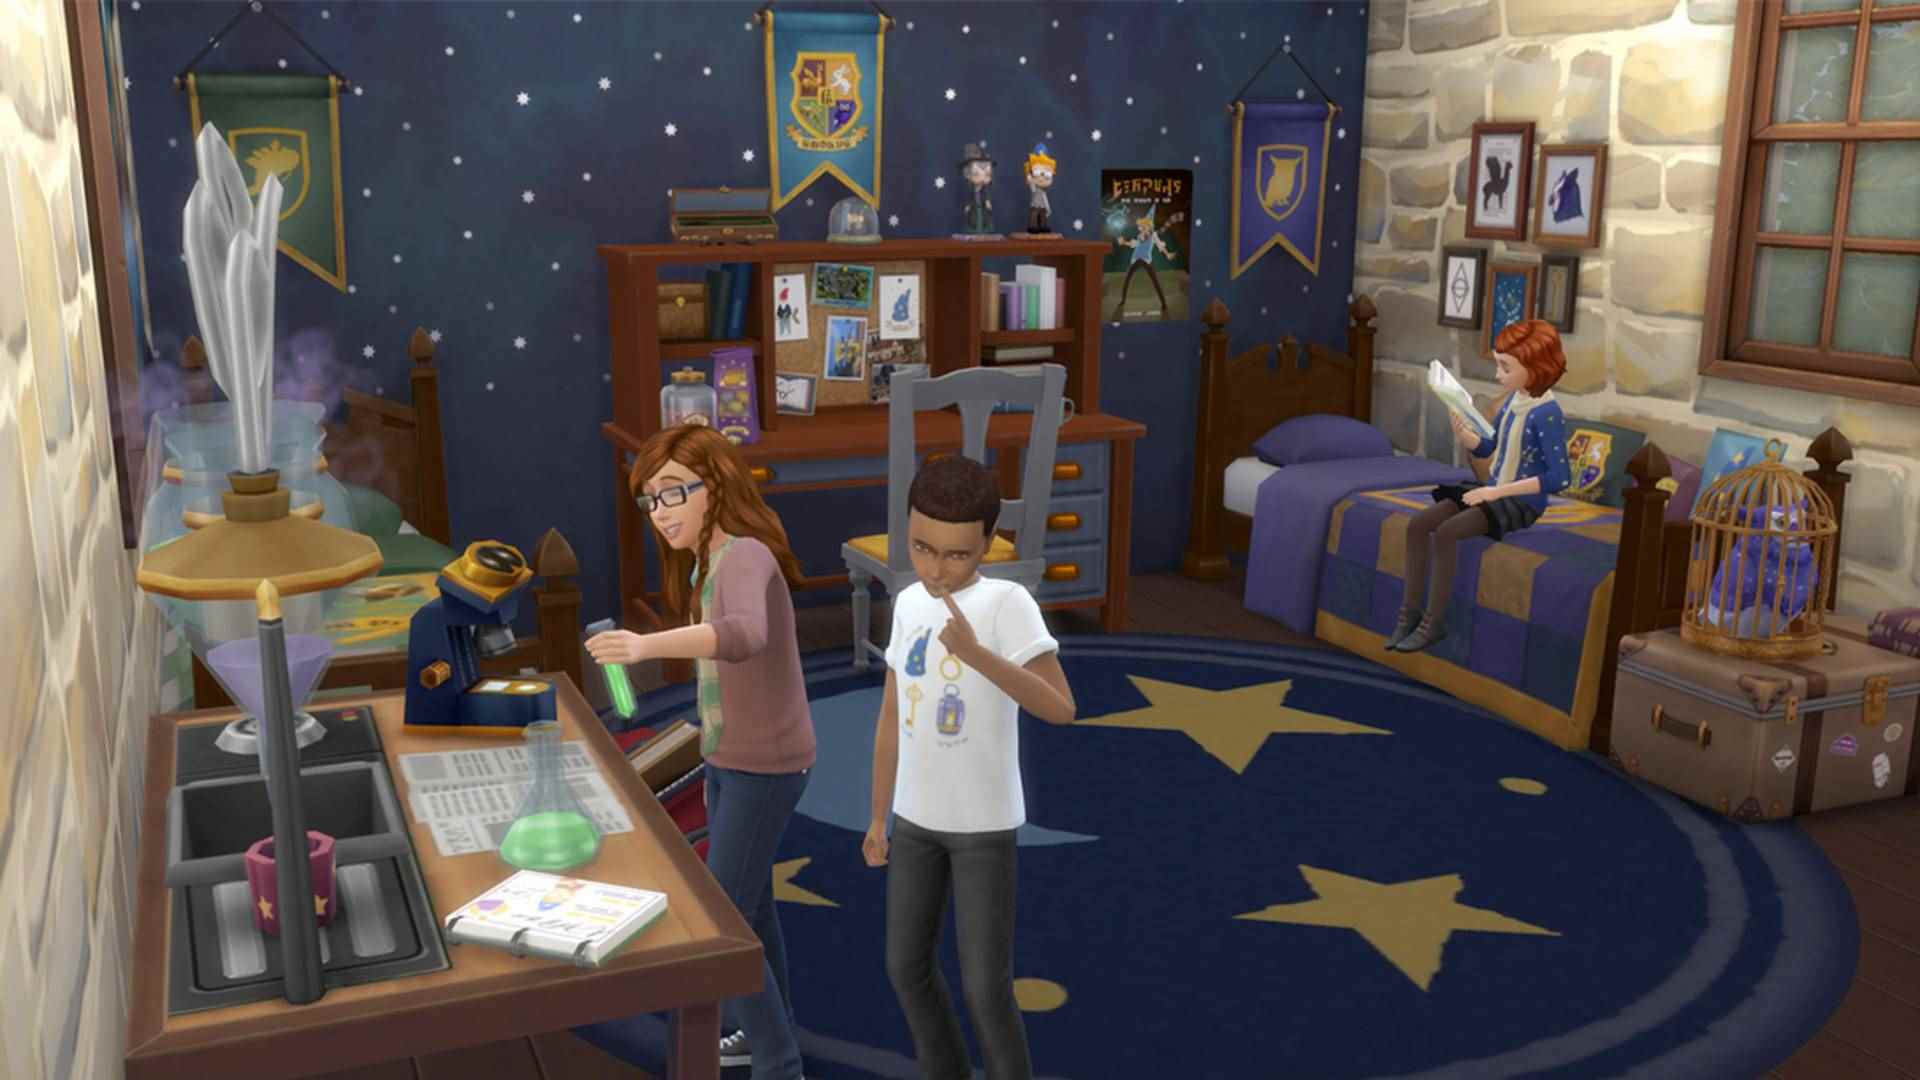 Sims 4 CC: Sihirbaz temalı öğeler ve dekorasyonlarla döşenmiş bir çocuk odası